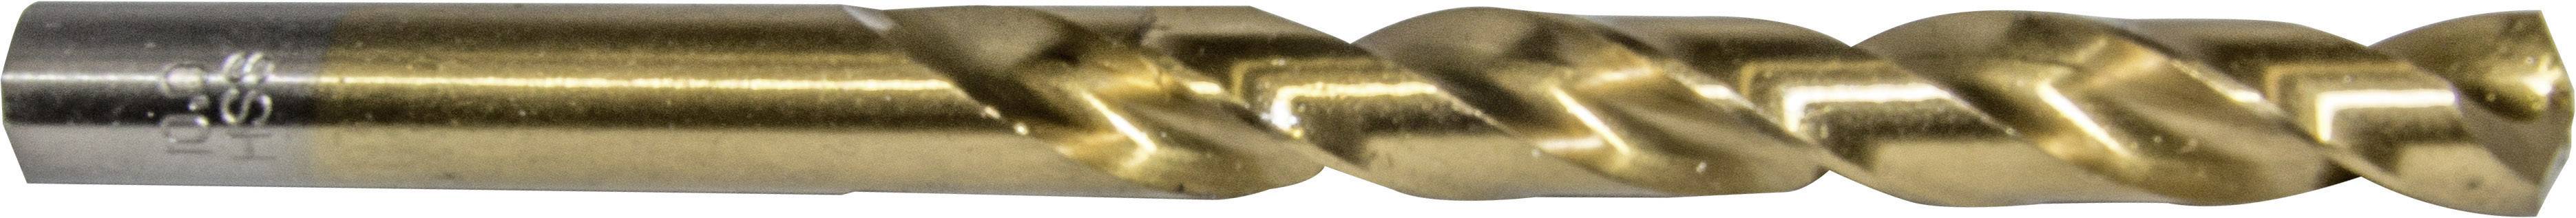 HELLER 29264 1 Metall-Spiralbohrer 1 Stück 5 mm Gesamtlänge 86 mm 1 St.